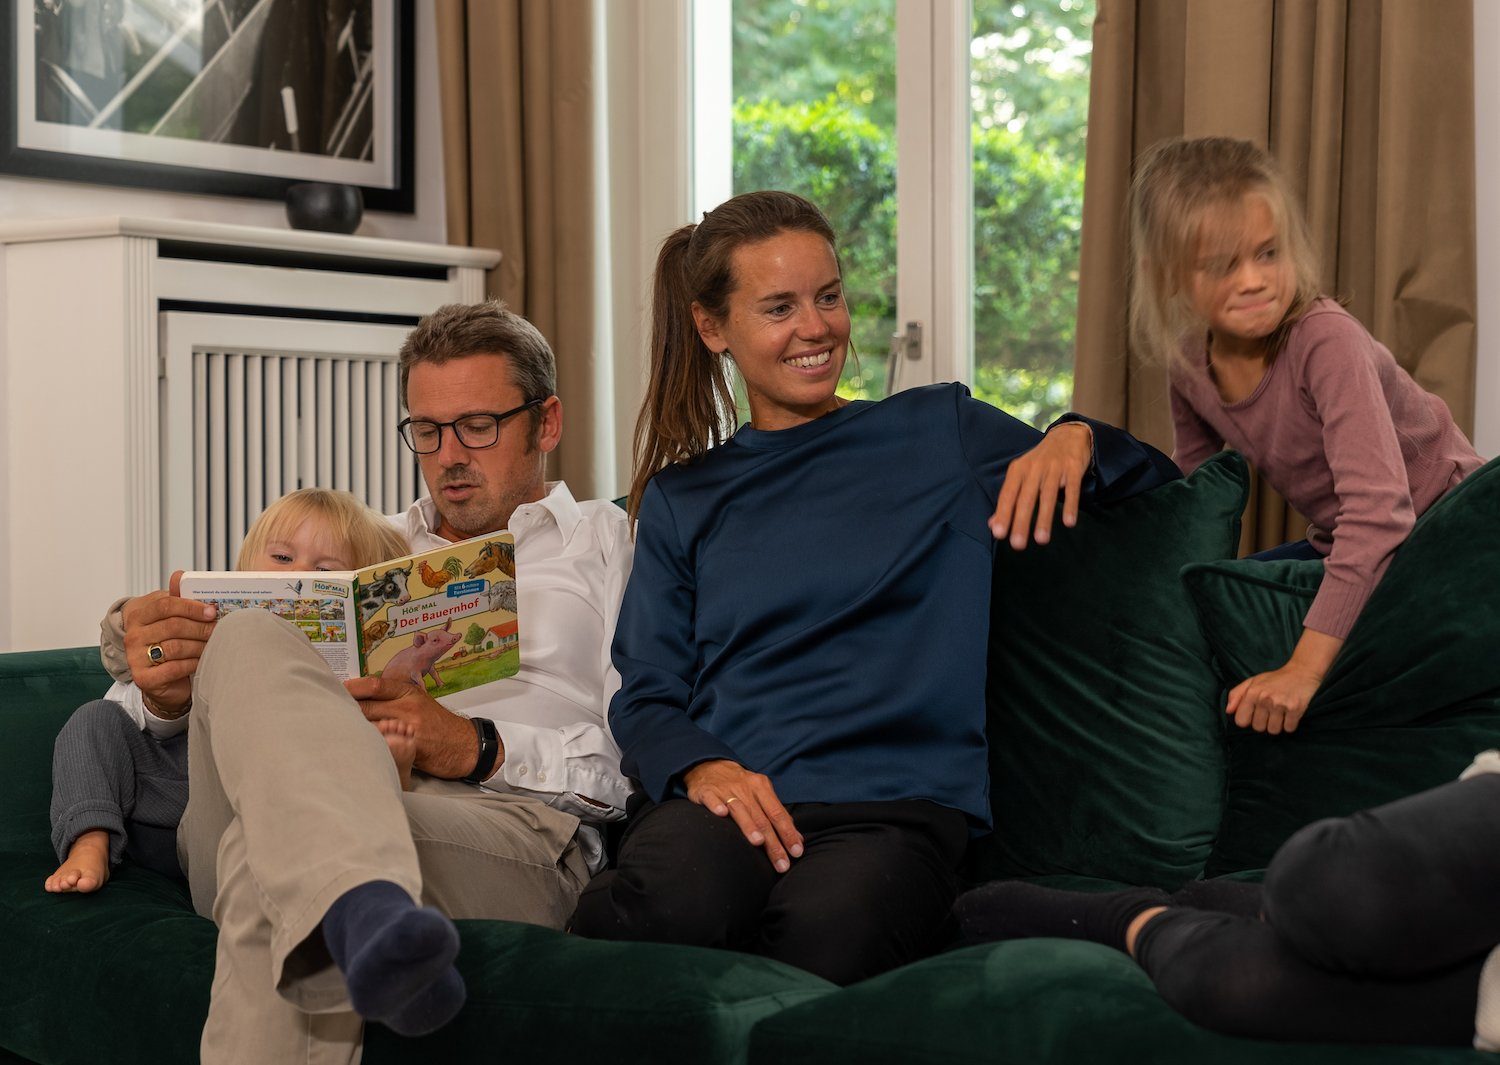 4 Sitzer Grün in 4 Sofa Made Elements Couch Sofa XL Samt Europe in (Samt) Big Größen, Sofa AMARIS 'Monroe' Wohnzimmer